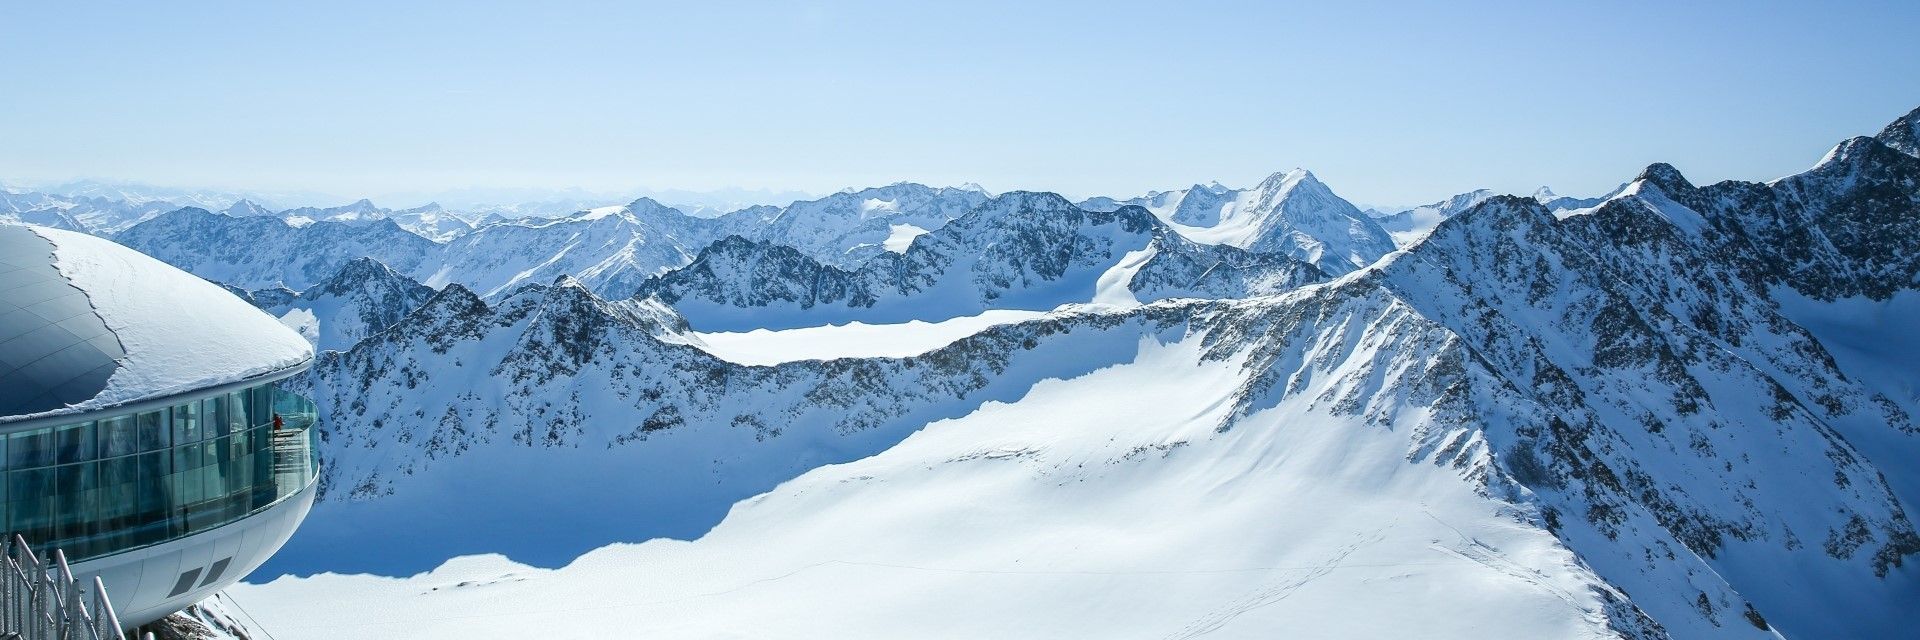 Češi se nechtějí vzdát lyžování a míří za sněhem do alpských středisek